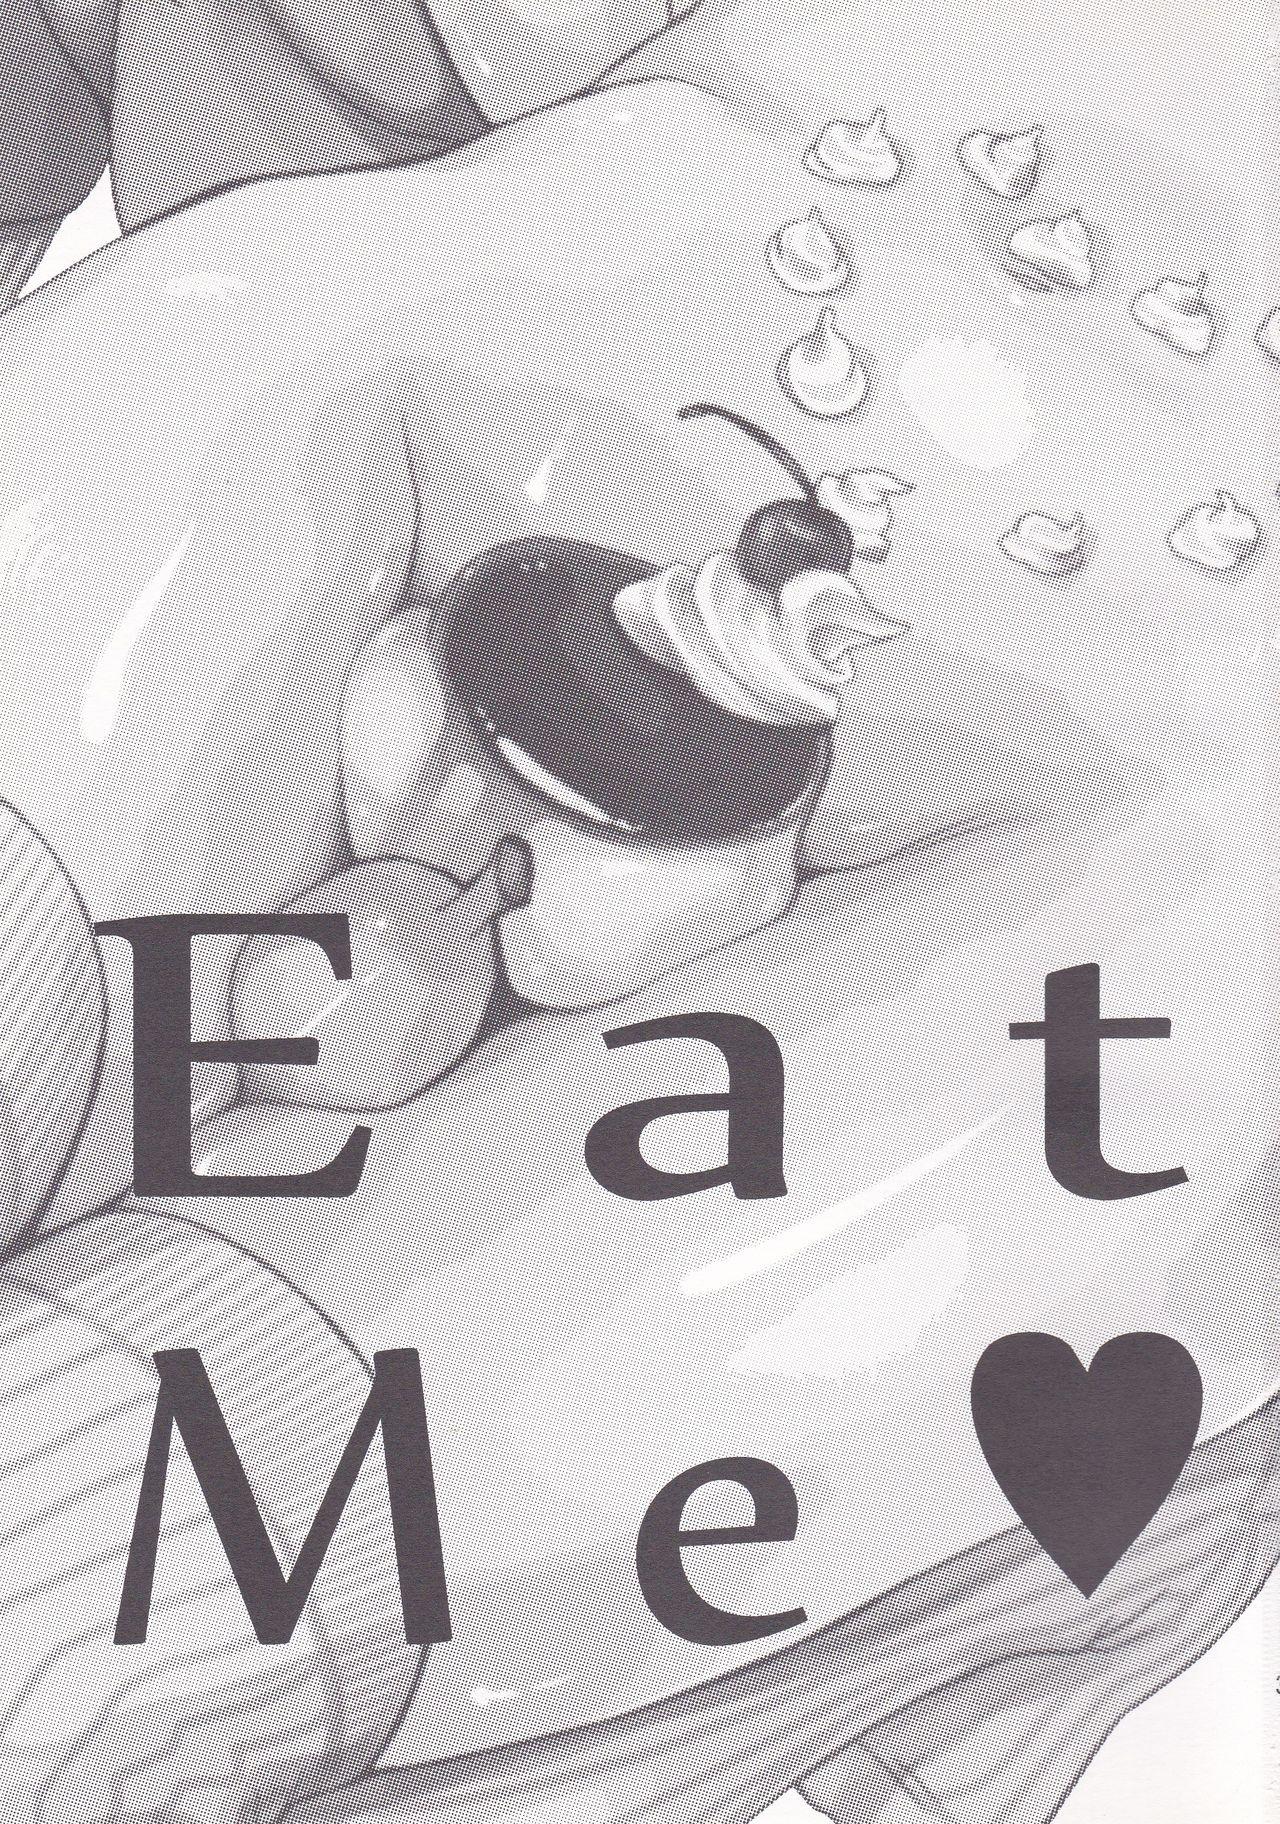 Eat Me 1